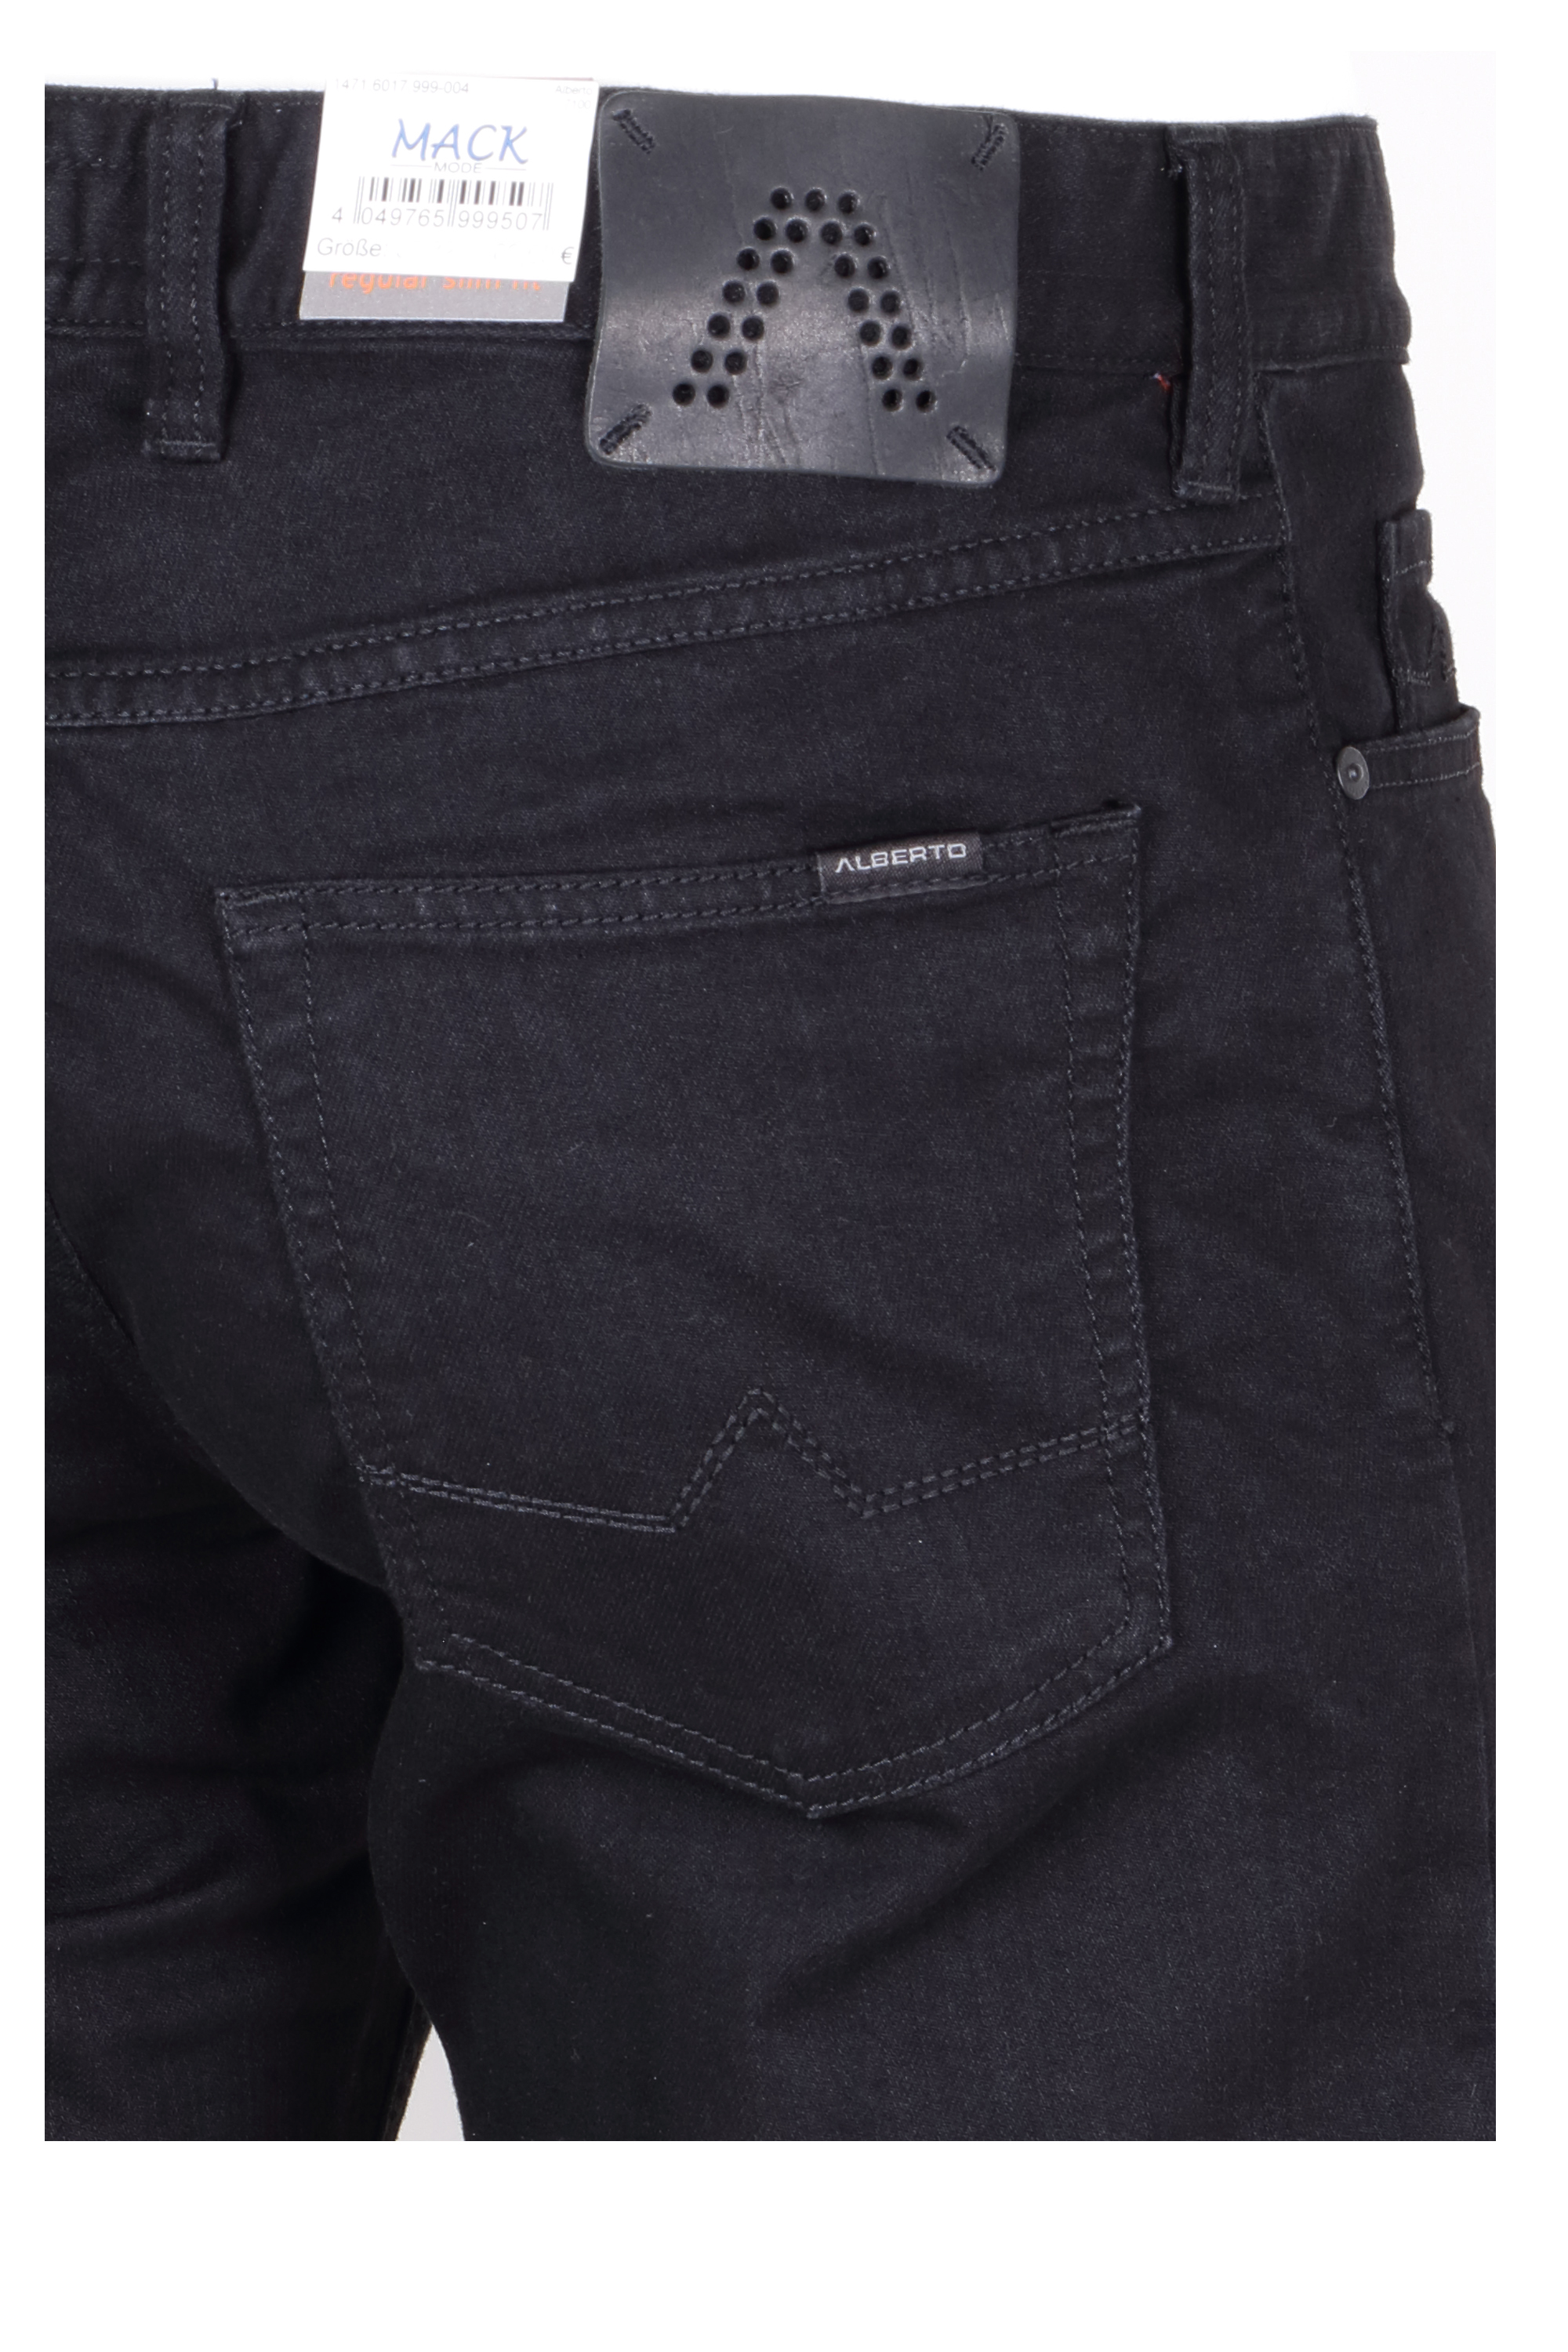 Alberto Herren Jeans Pipe regular fit - schwarz 32/32